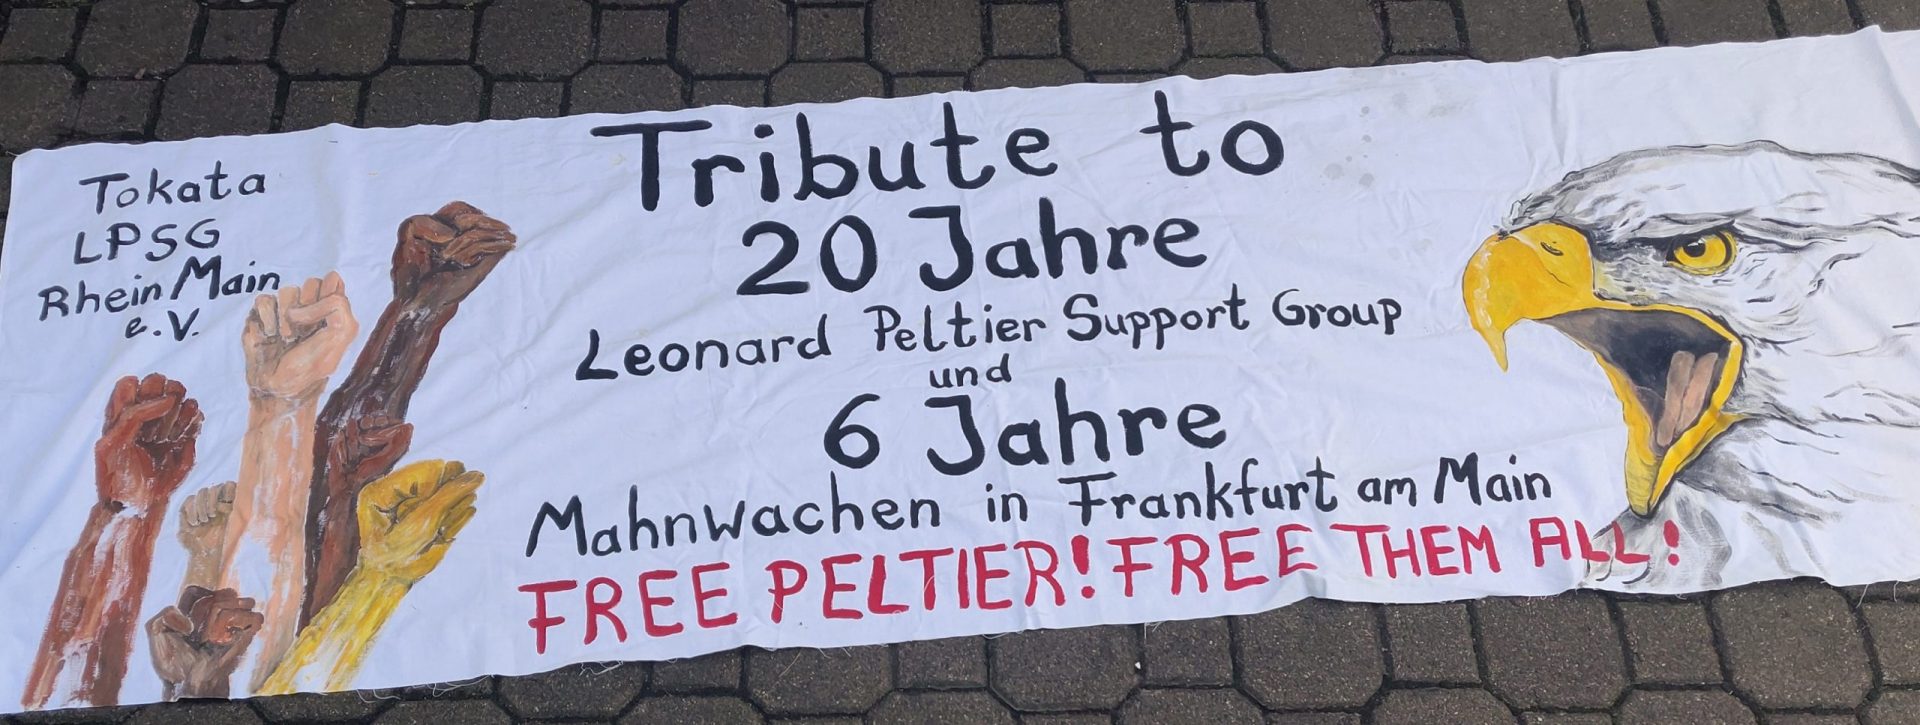 20 Jahre Mahnwachen für Leonard Peltier in Frankfurt/6 monatliche Jahre Mahnwachen für Peltier, Abu-Jamal, Ana Belén Montes u.a. in Frankfurt & 20 Jahre LPSG RheinMain.